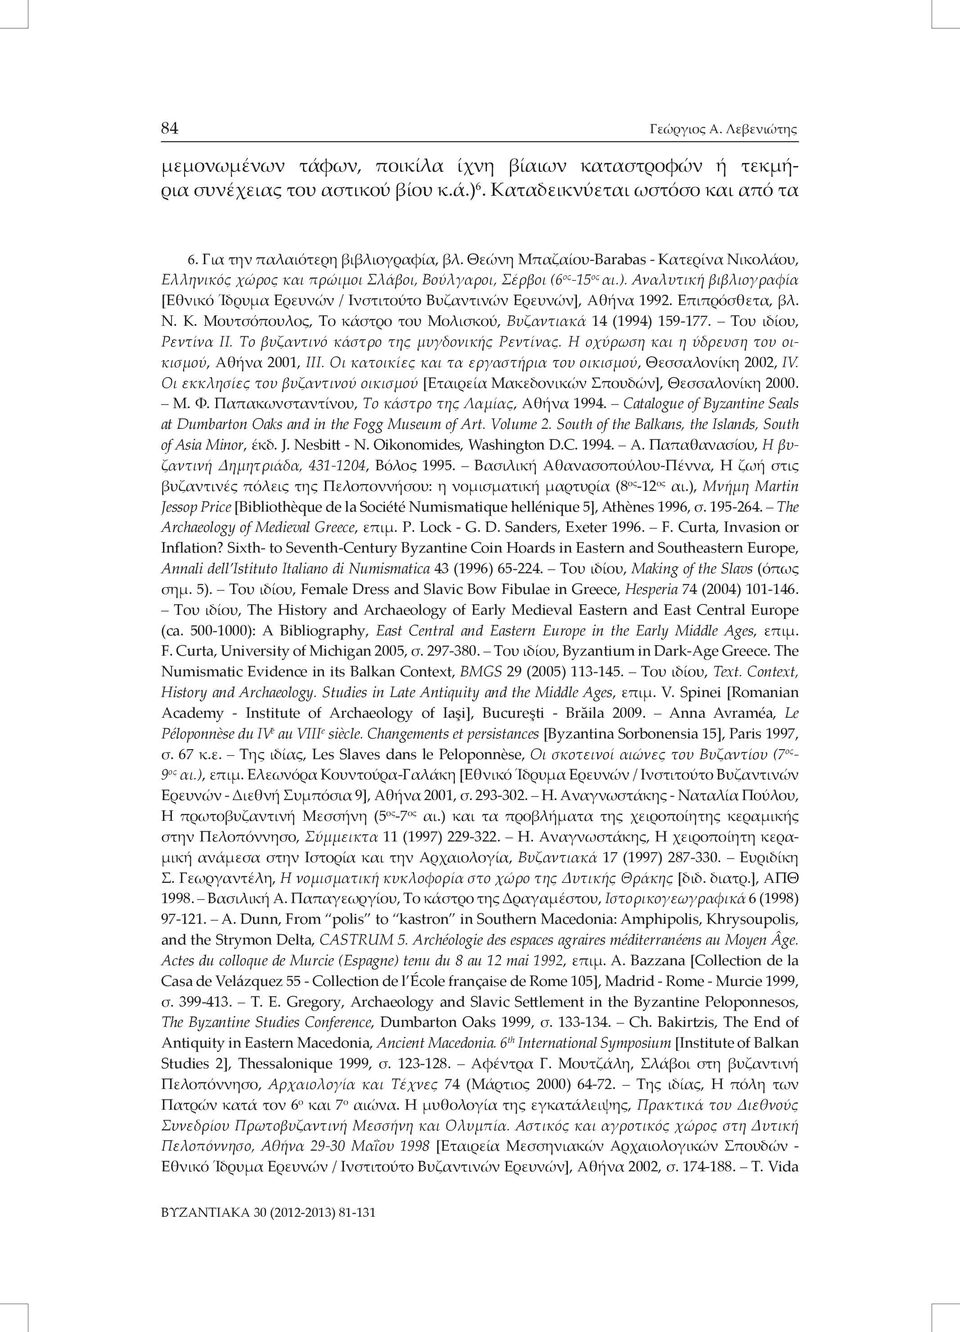 Αναλυτική βιβλιογραφία [Εθνικό Ίδρυμα Ερευνών / Ινστιτούτο Βυζαντινών Ερευνών], Αθήνα 1992. Επιπρόσθετα, βλ. Ν. Κ. Μουτσόπουλος, Το κάστρο του Μολισκού, Βυζαντιακά 14 (1994) 159-177.